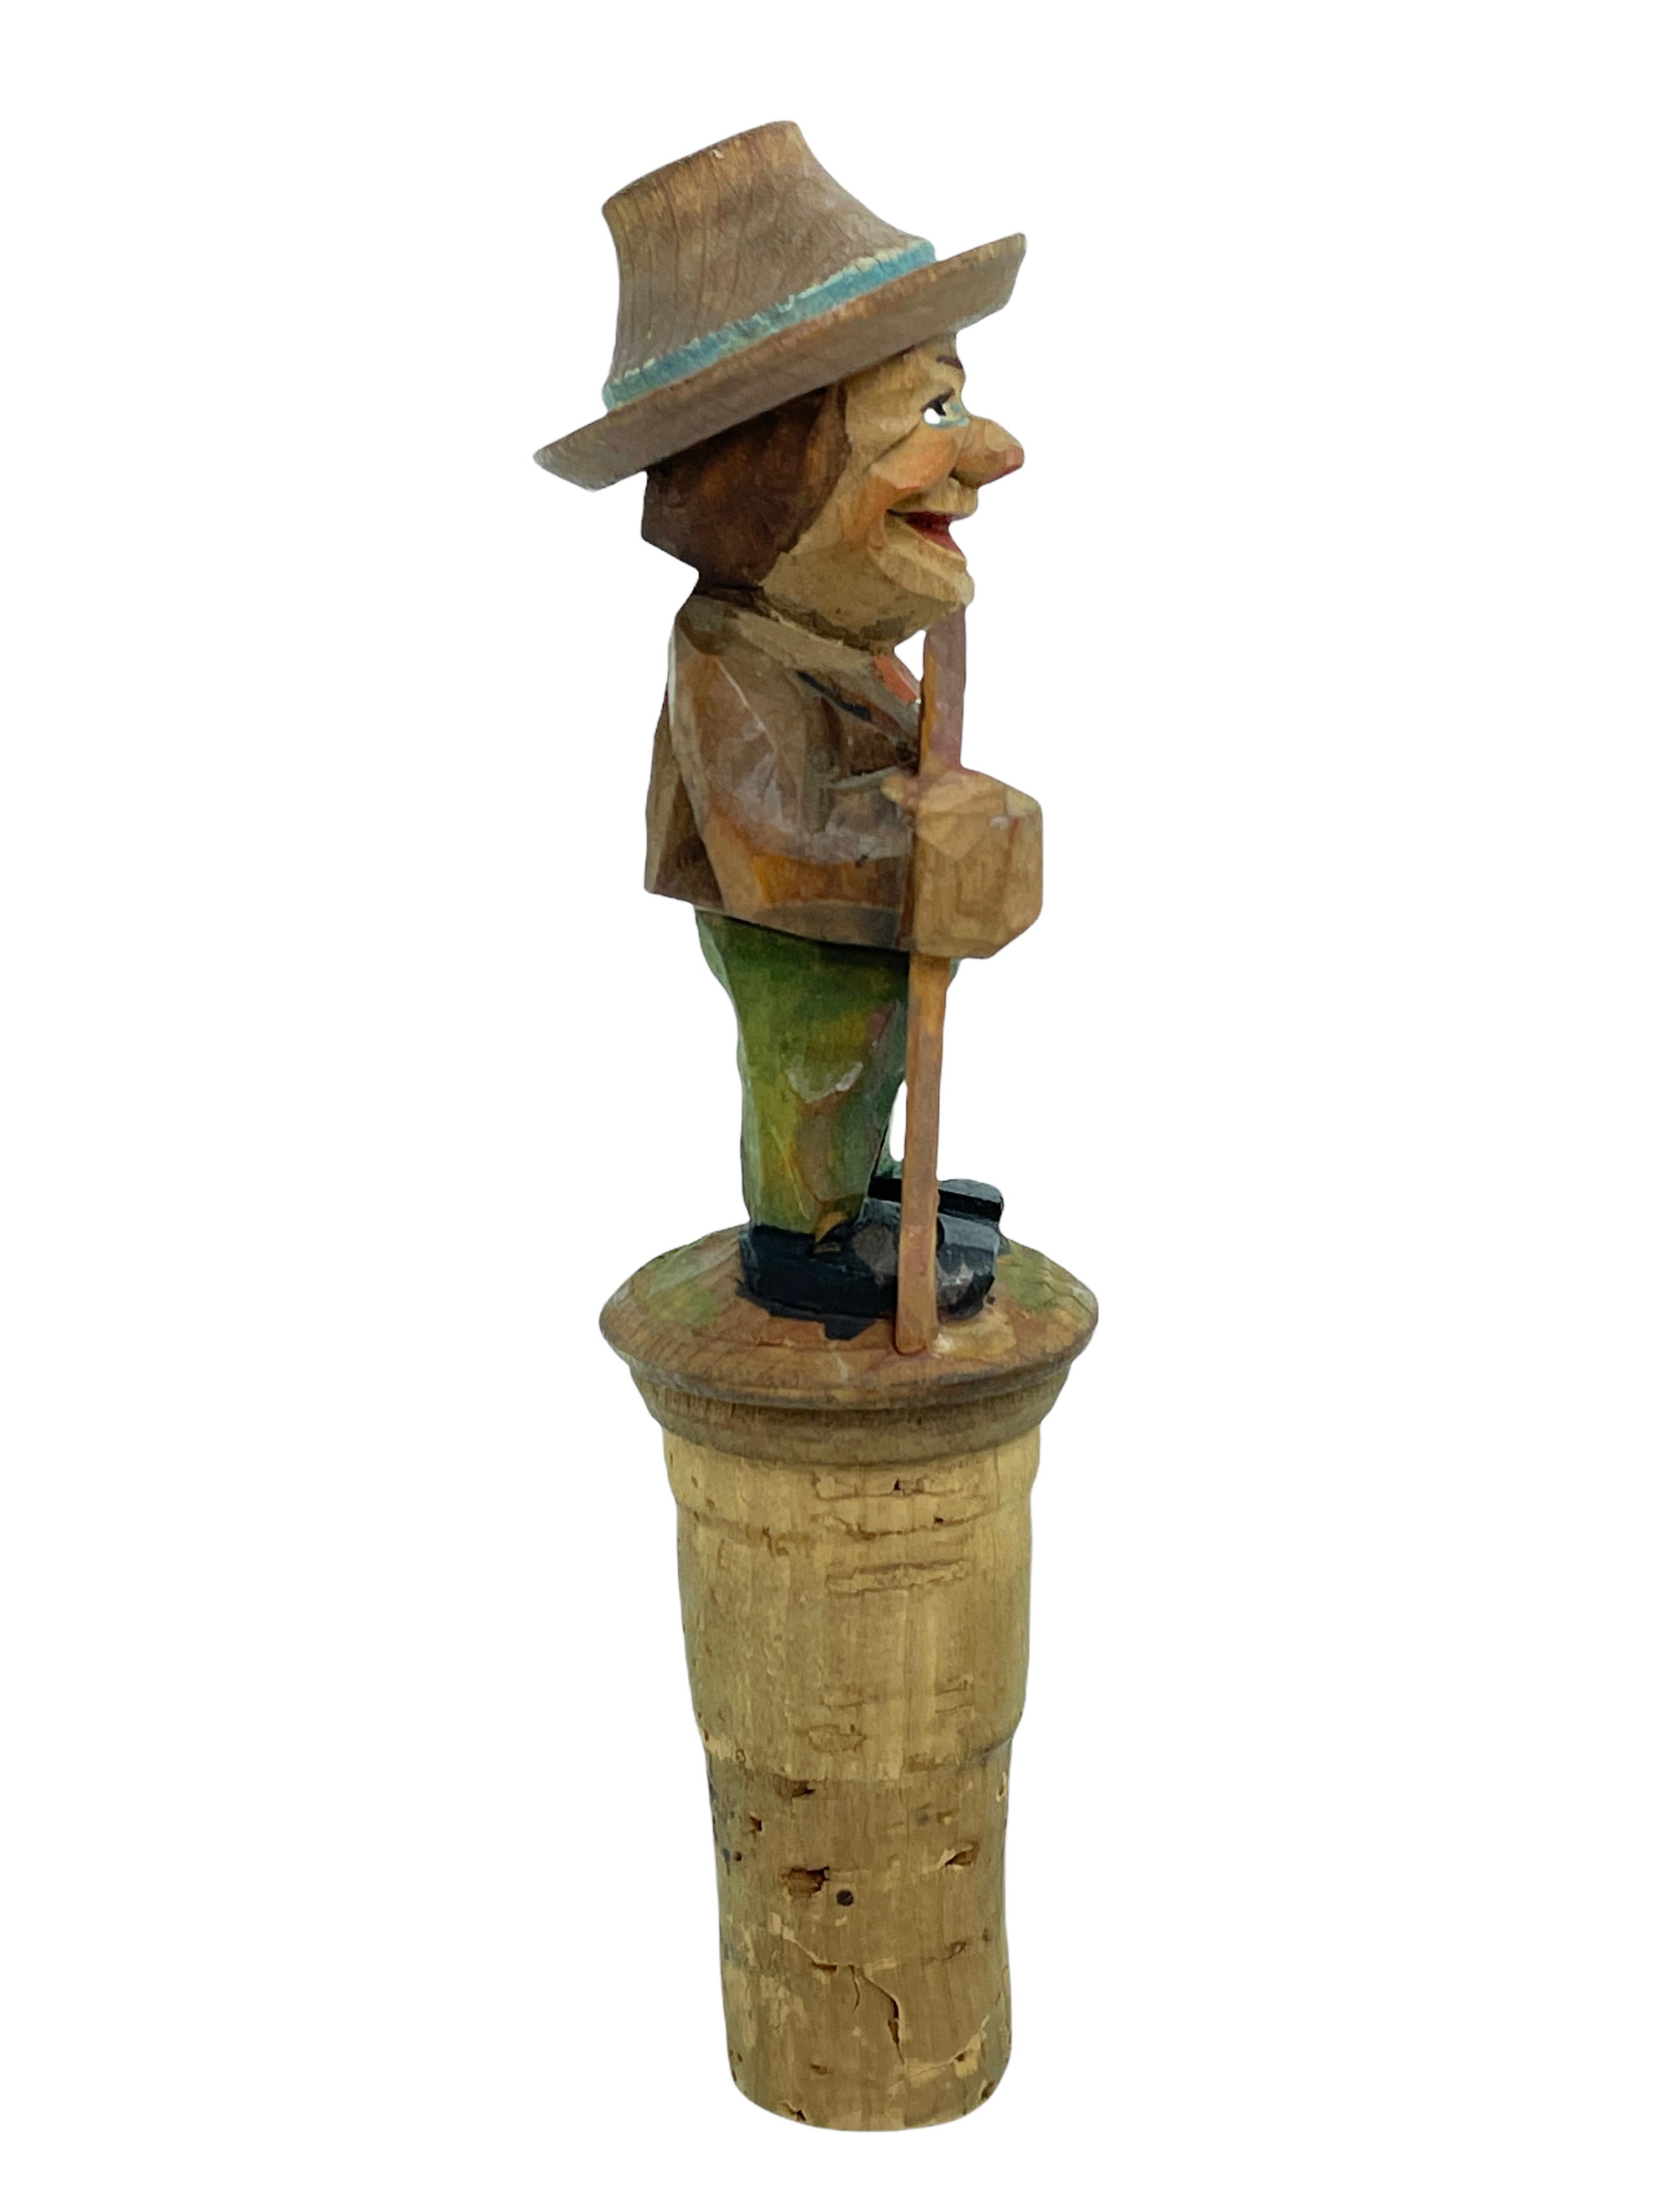 Italian Anri Wood Carved Figural Tramp Bottle Topper Stopper, 1950s